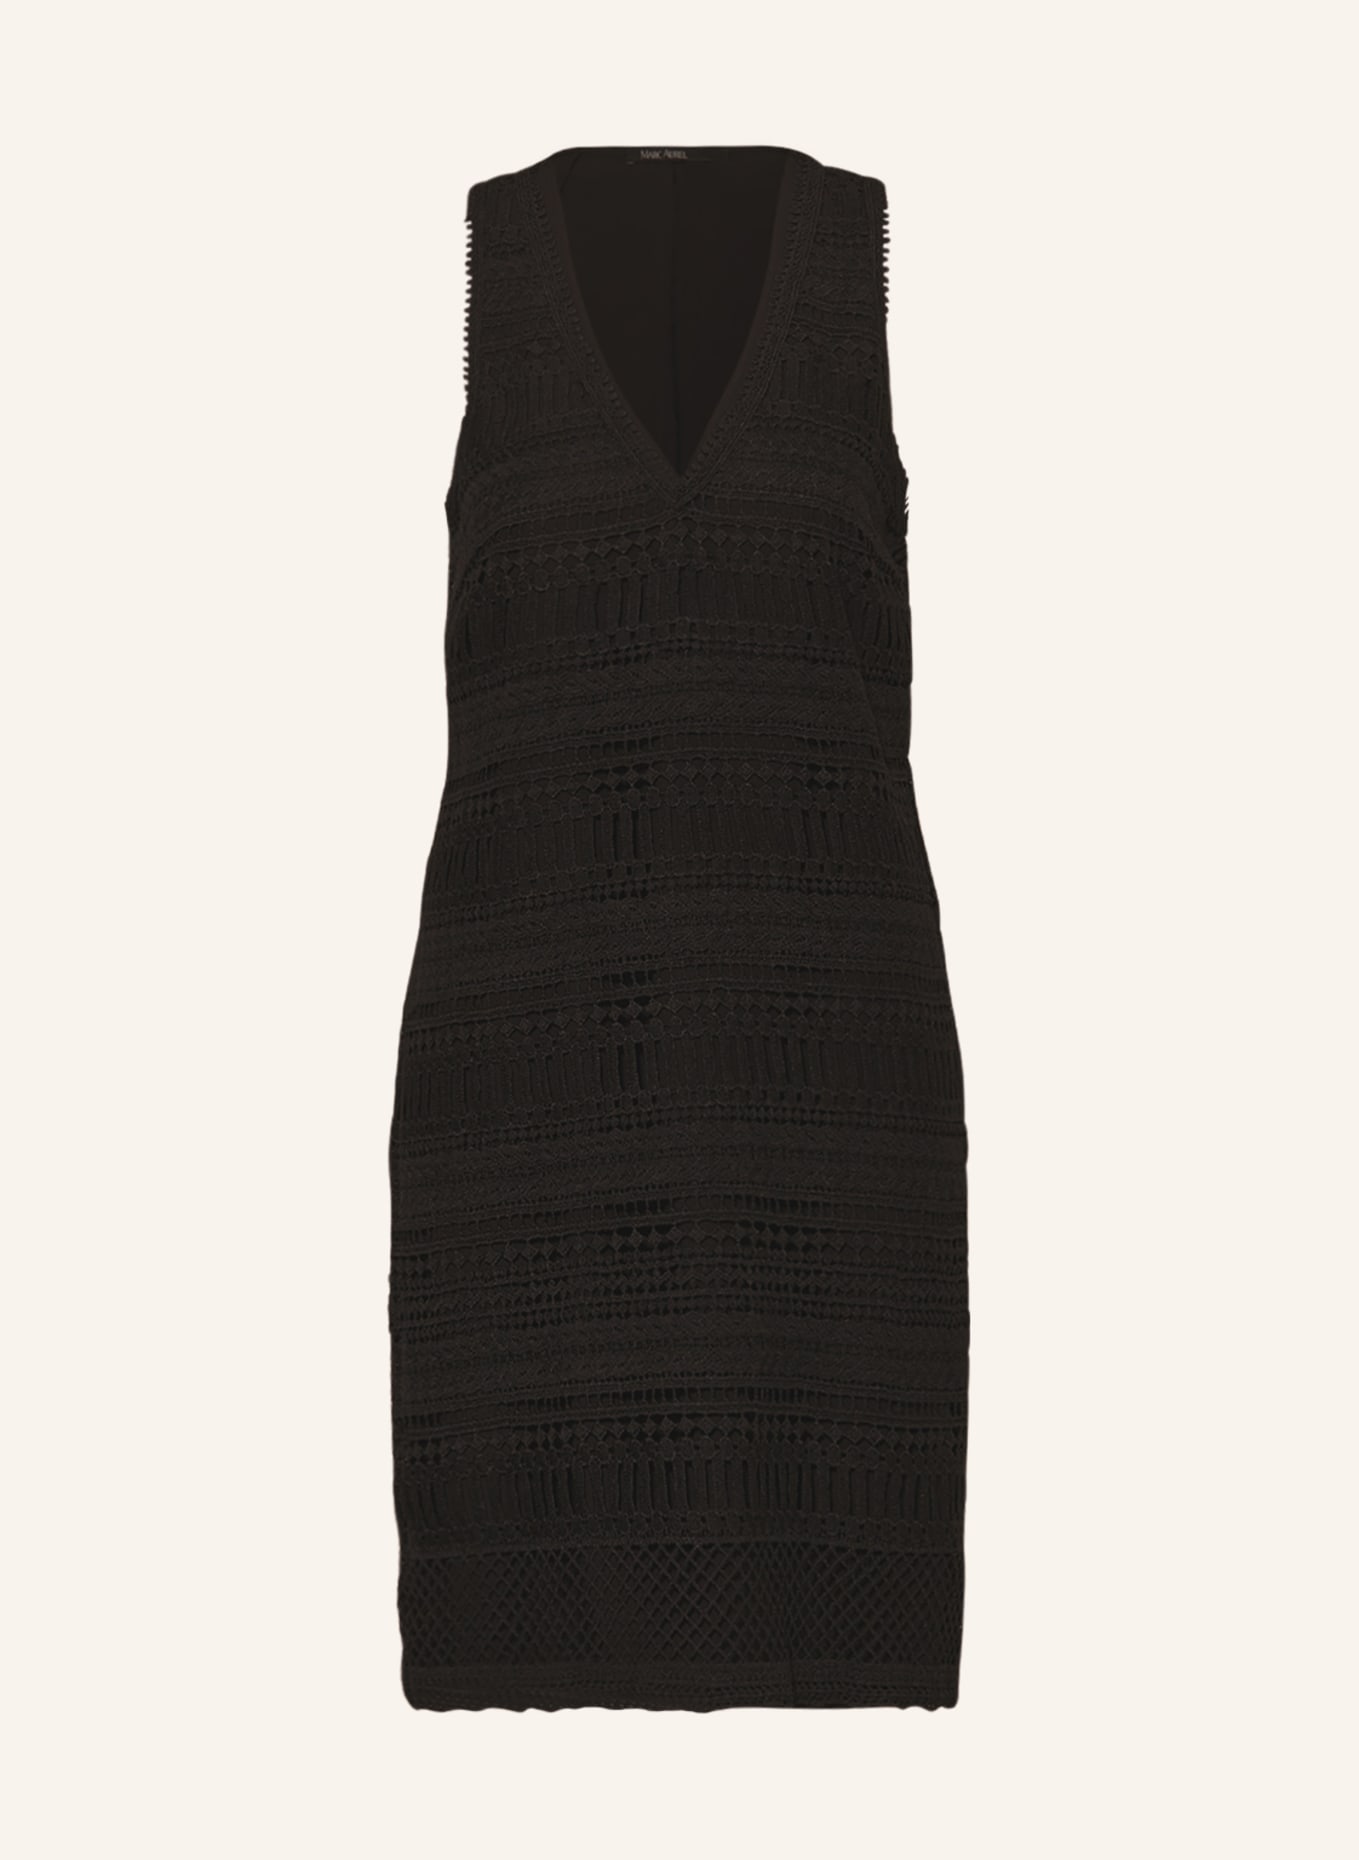 MARC AUREL Knit dress, Color: BLACK (Image 1)